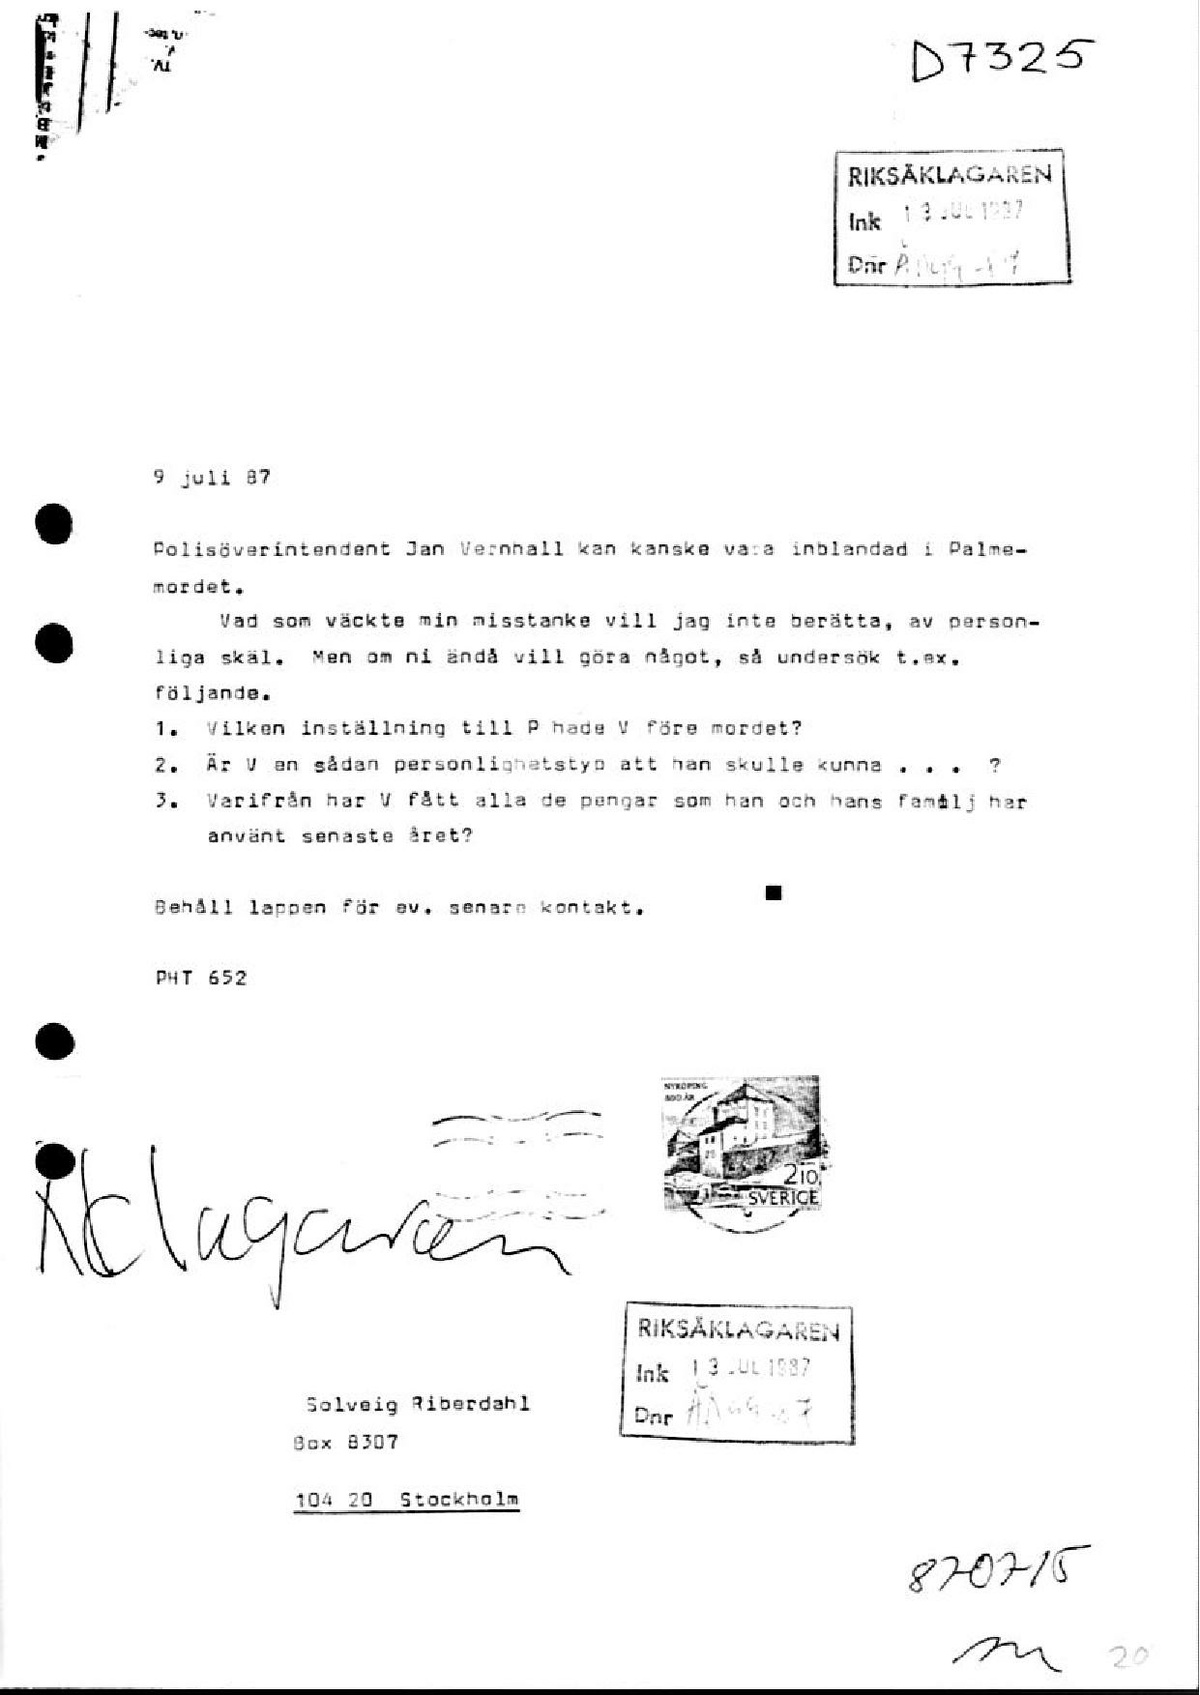 Pol-1987-07-15 D7325-00 Tips om pöint Jan Wernhall.pdf